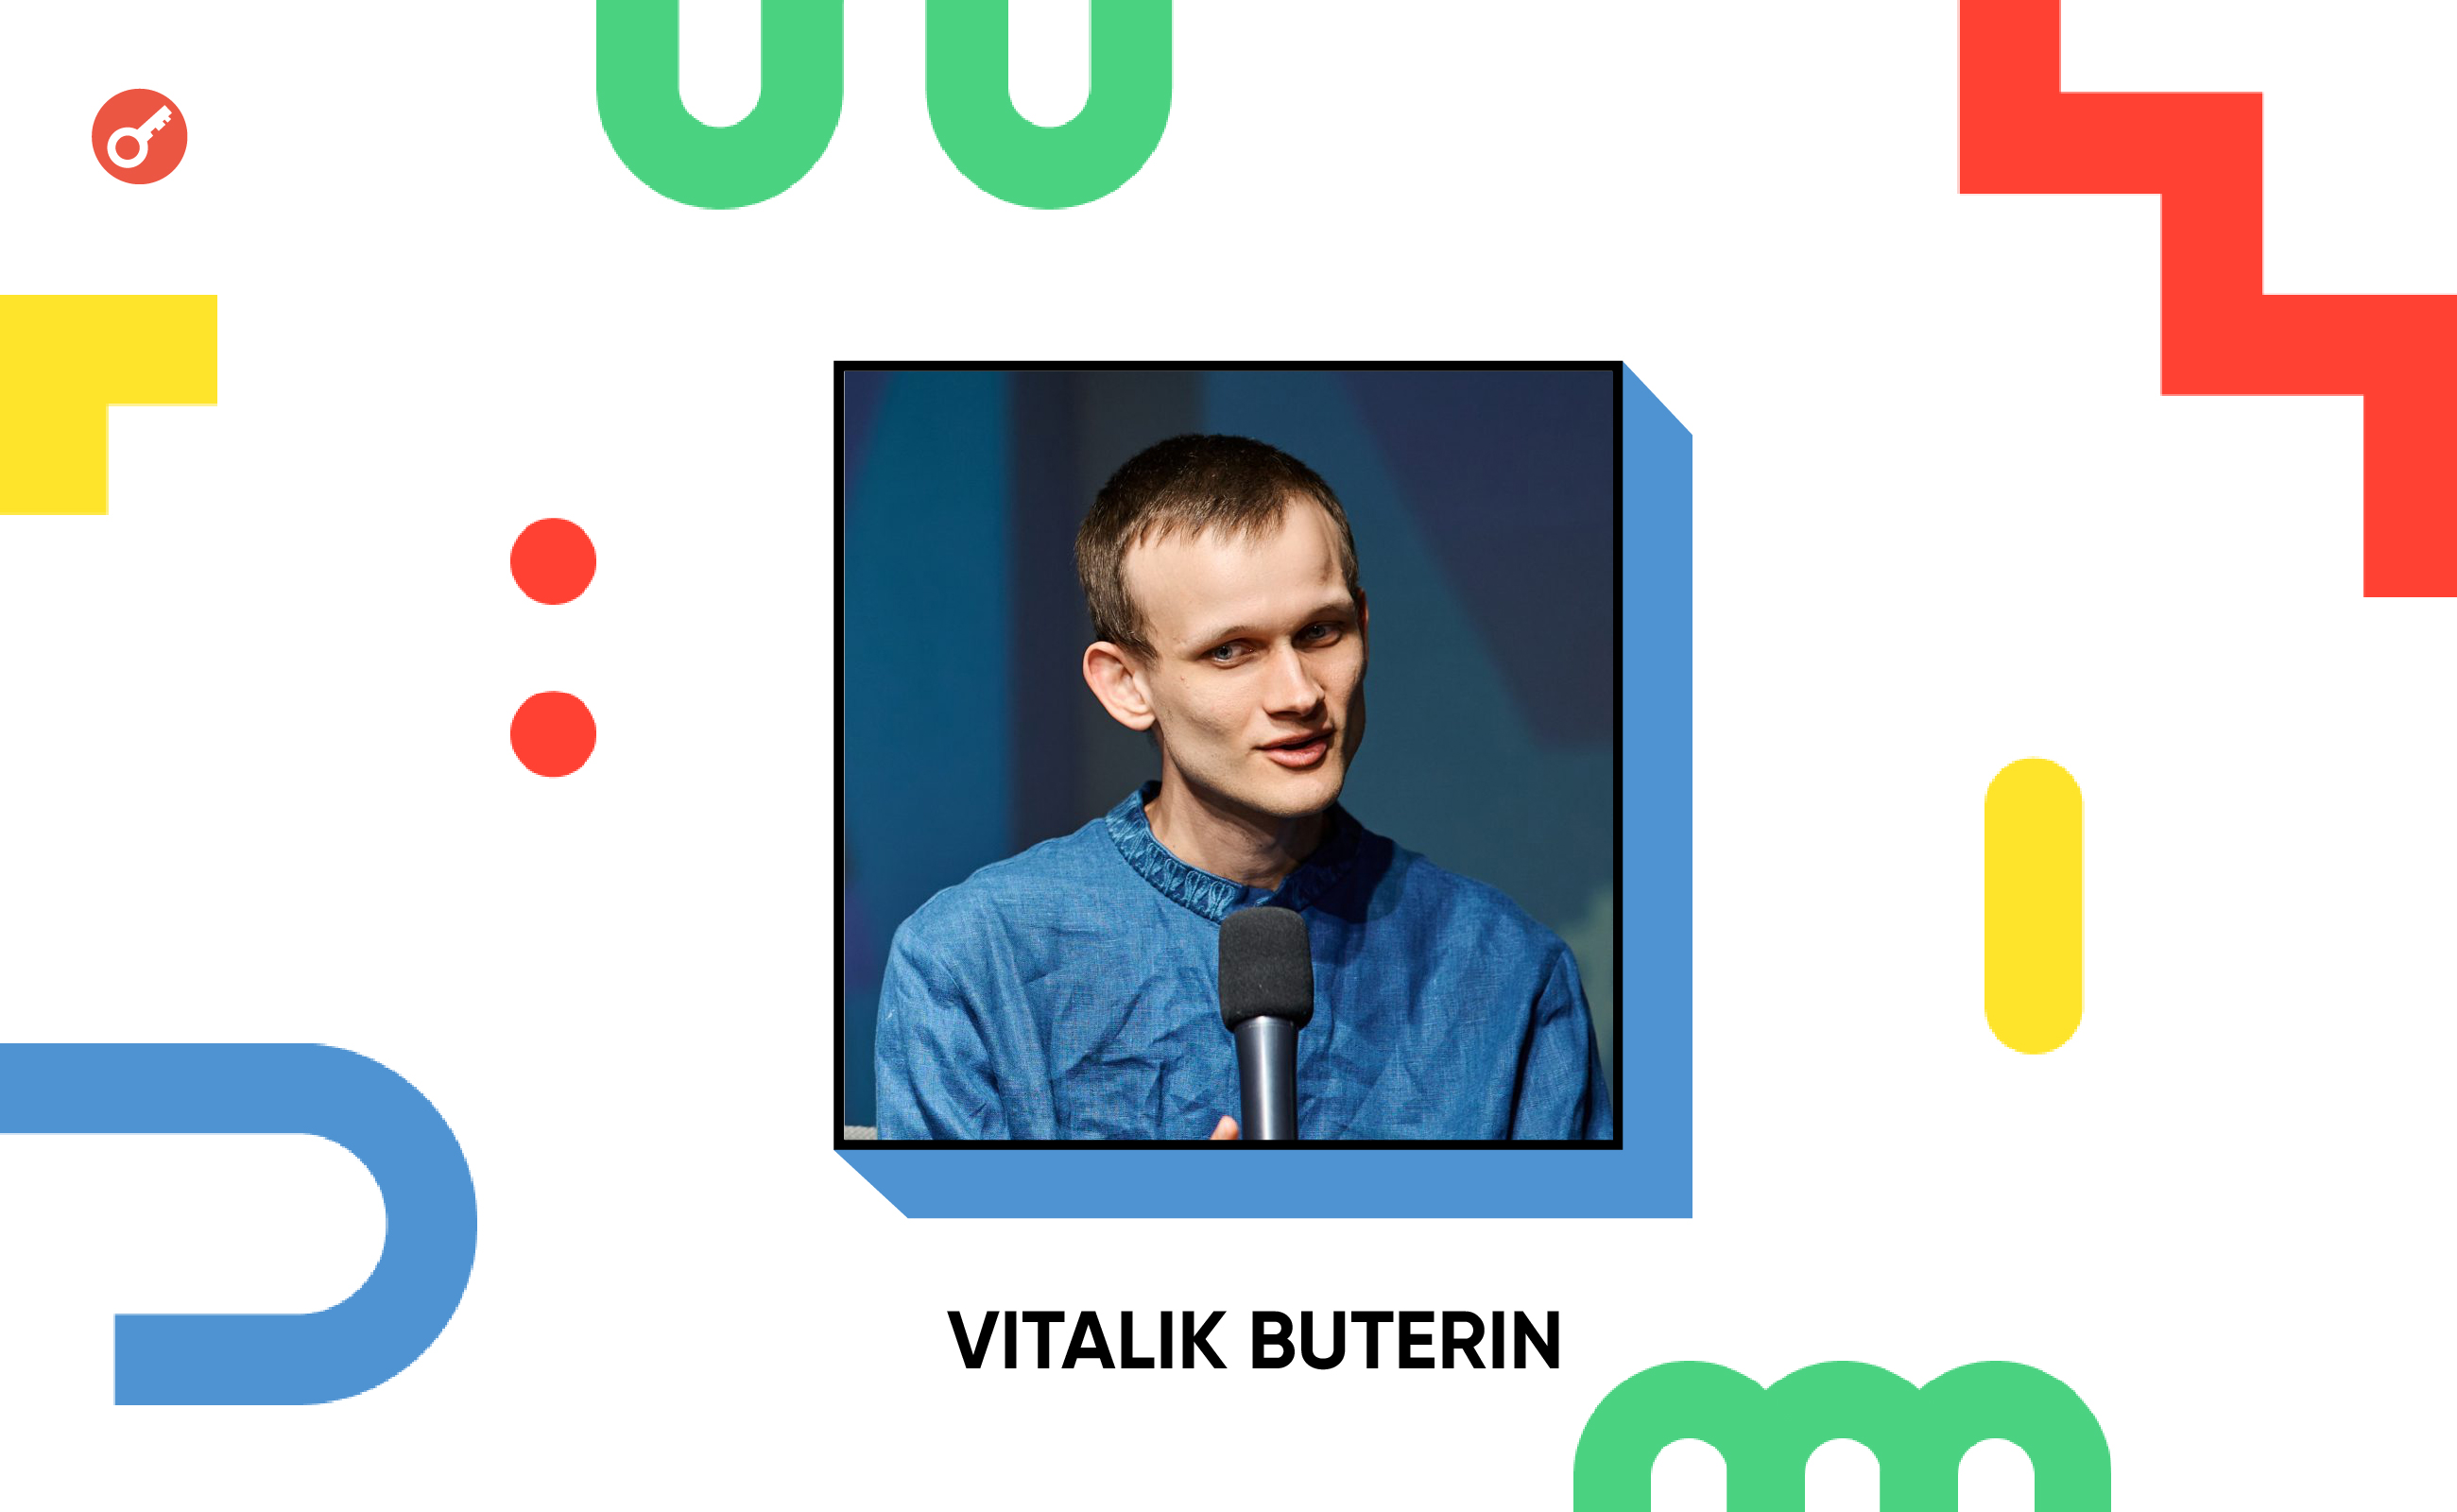 Віталік Бутерін розповів про зміни в українському ком’юніті та оцінив його внесок в екосистему Ethereum. Головний колаж новини.